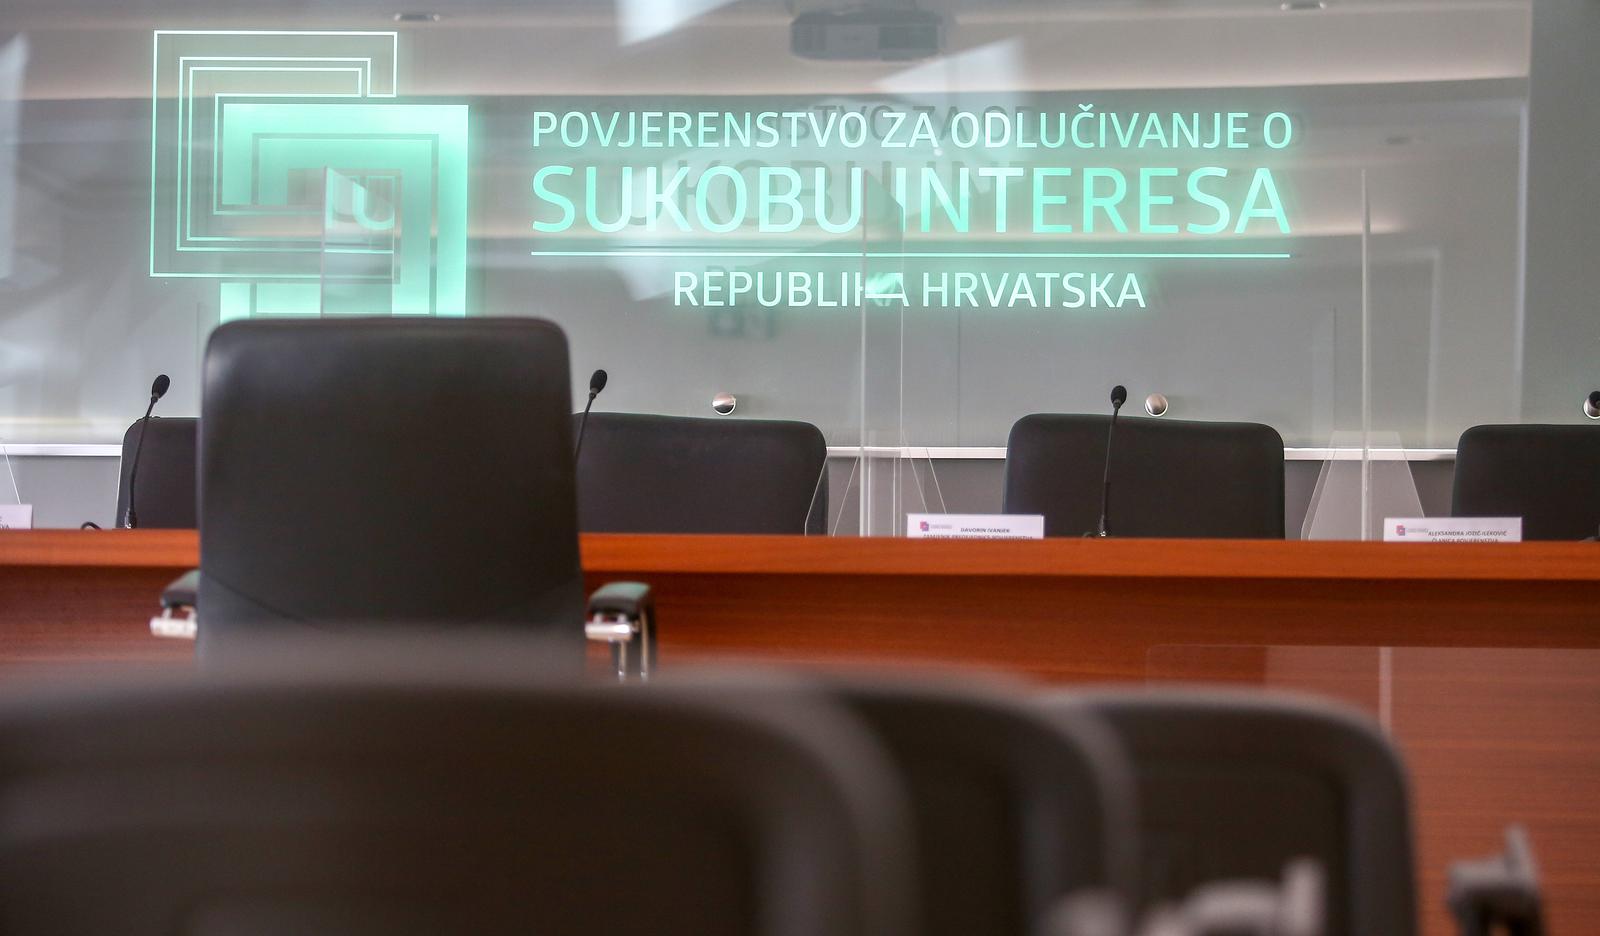 12.02.2021., Zagreb - Sjednica povjerenstva za odlucivanje o sukobu interesa. rPhoto: Matija Habljak/PIXSELL